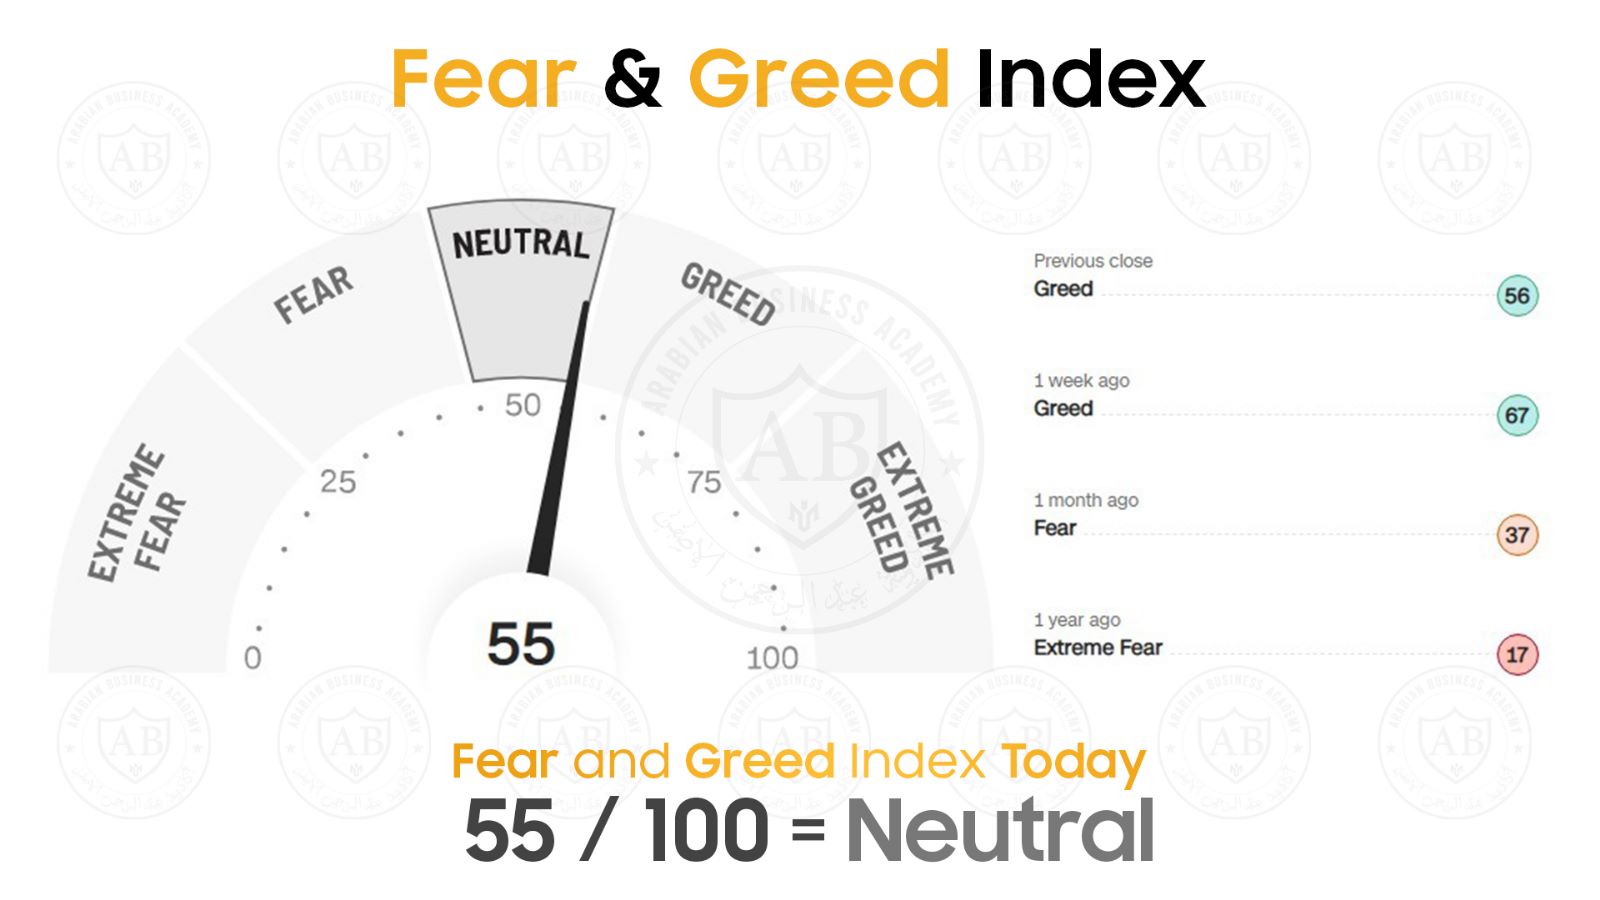 مؤشر  Fear and Greed  في أسواق الأسهم يشير  الى 55 /100  لجلسة اليوم